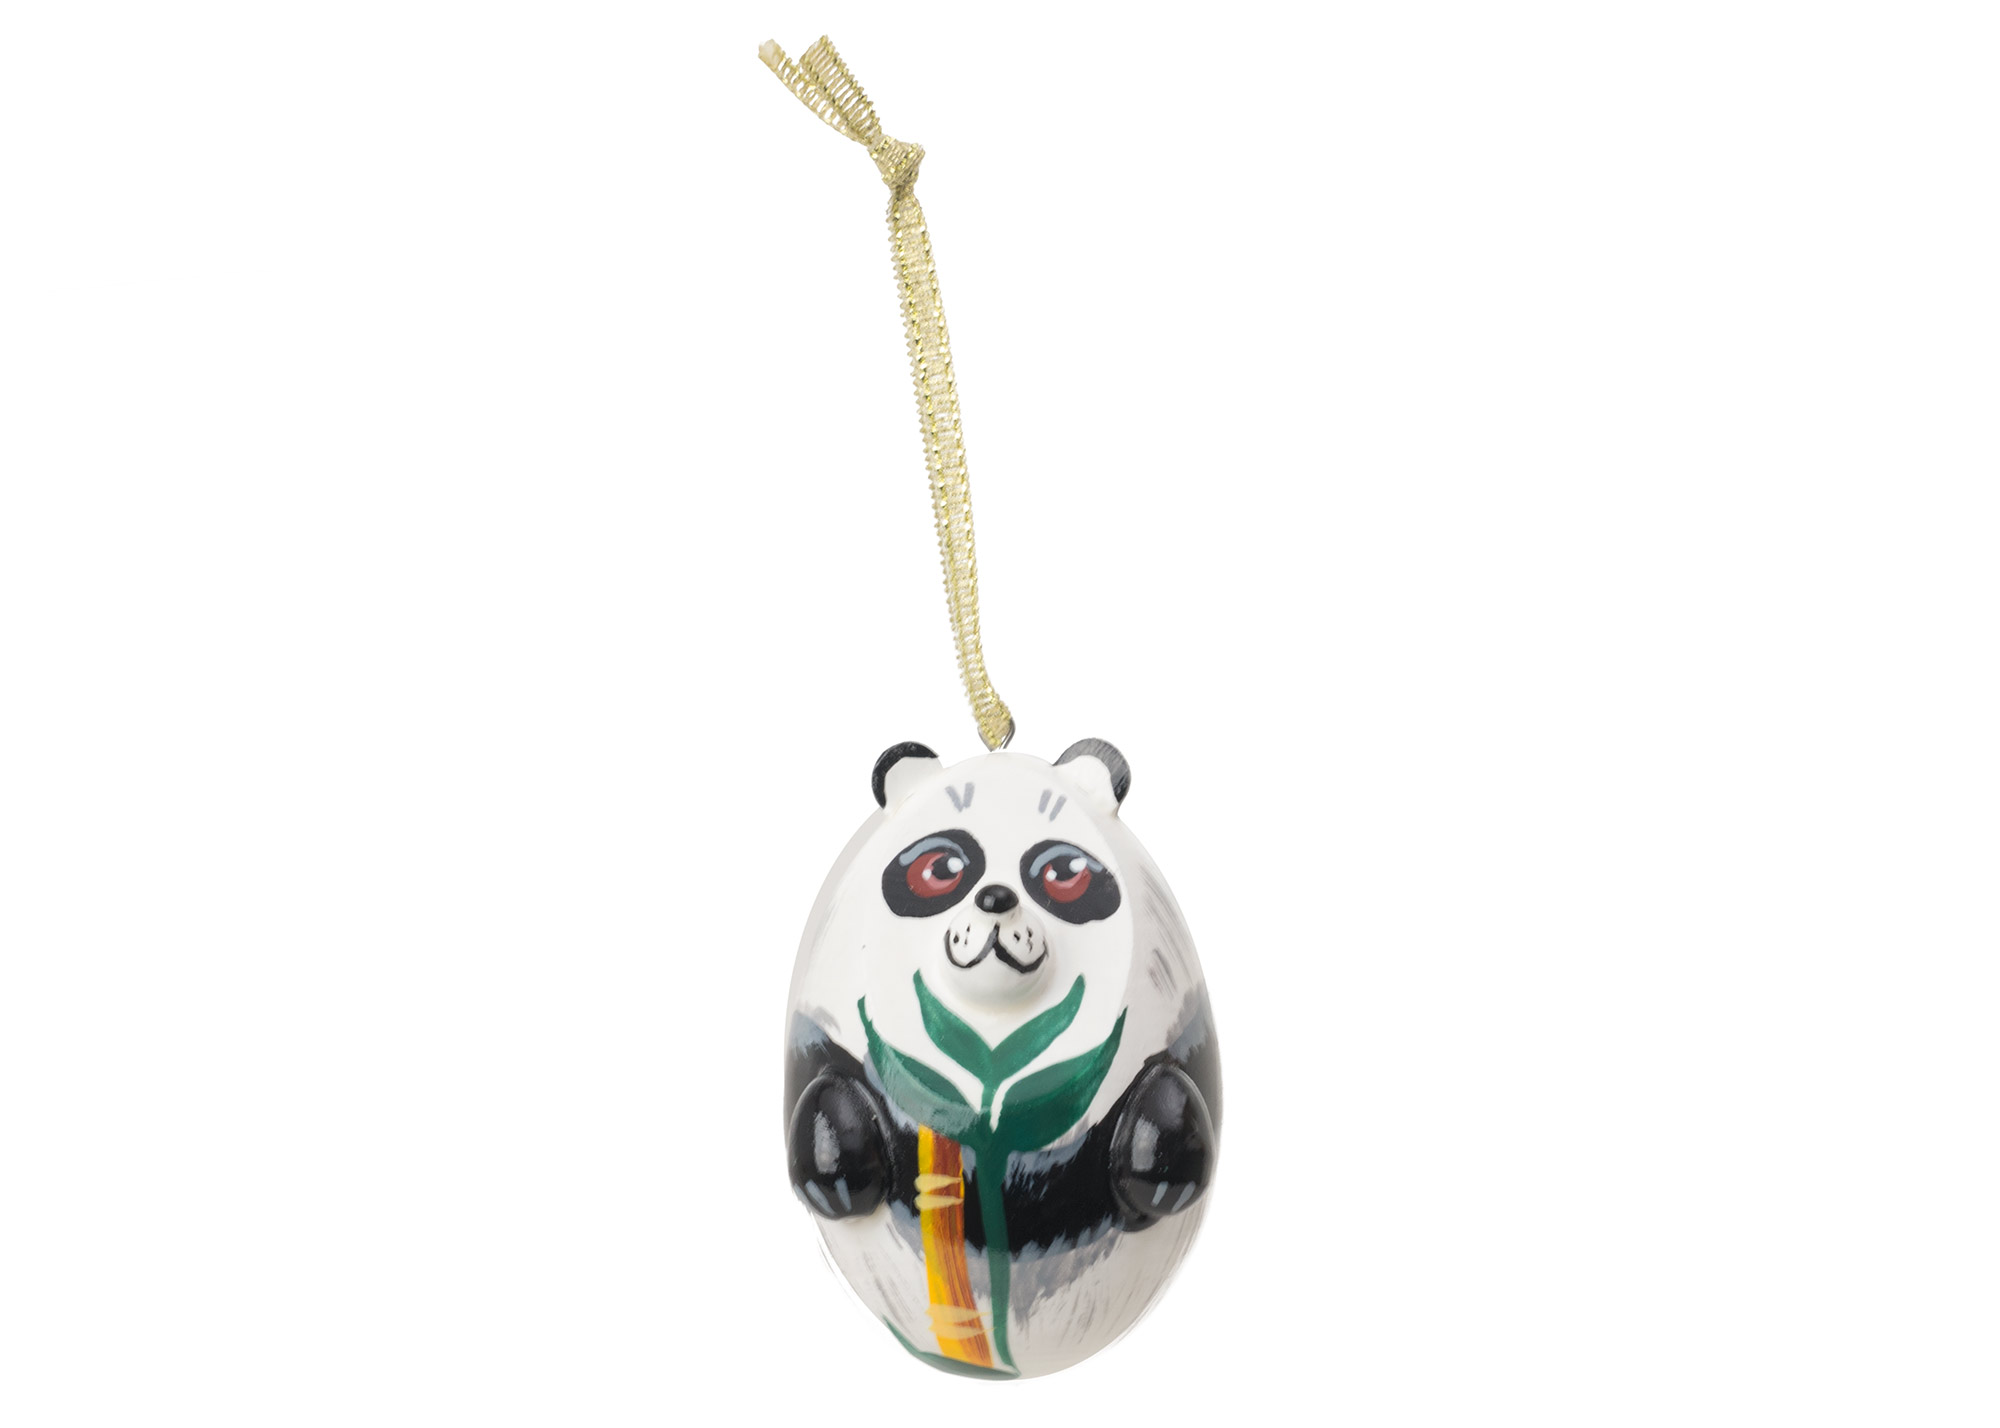 Buy Panda Bear Ornament  2" at GoldenCockerel.com